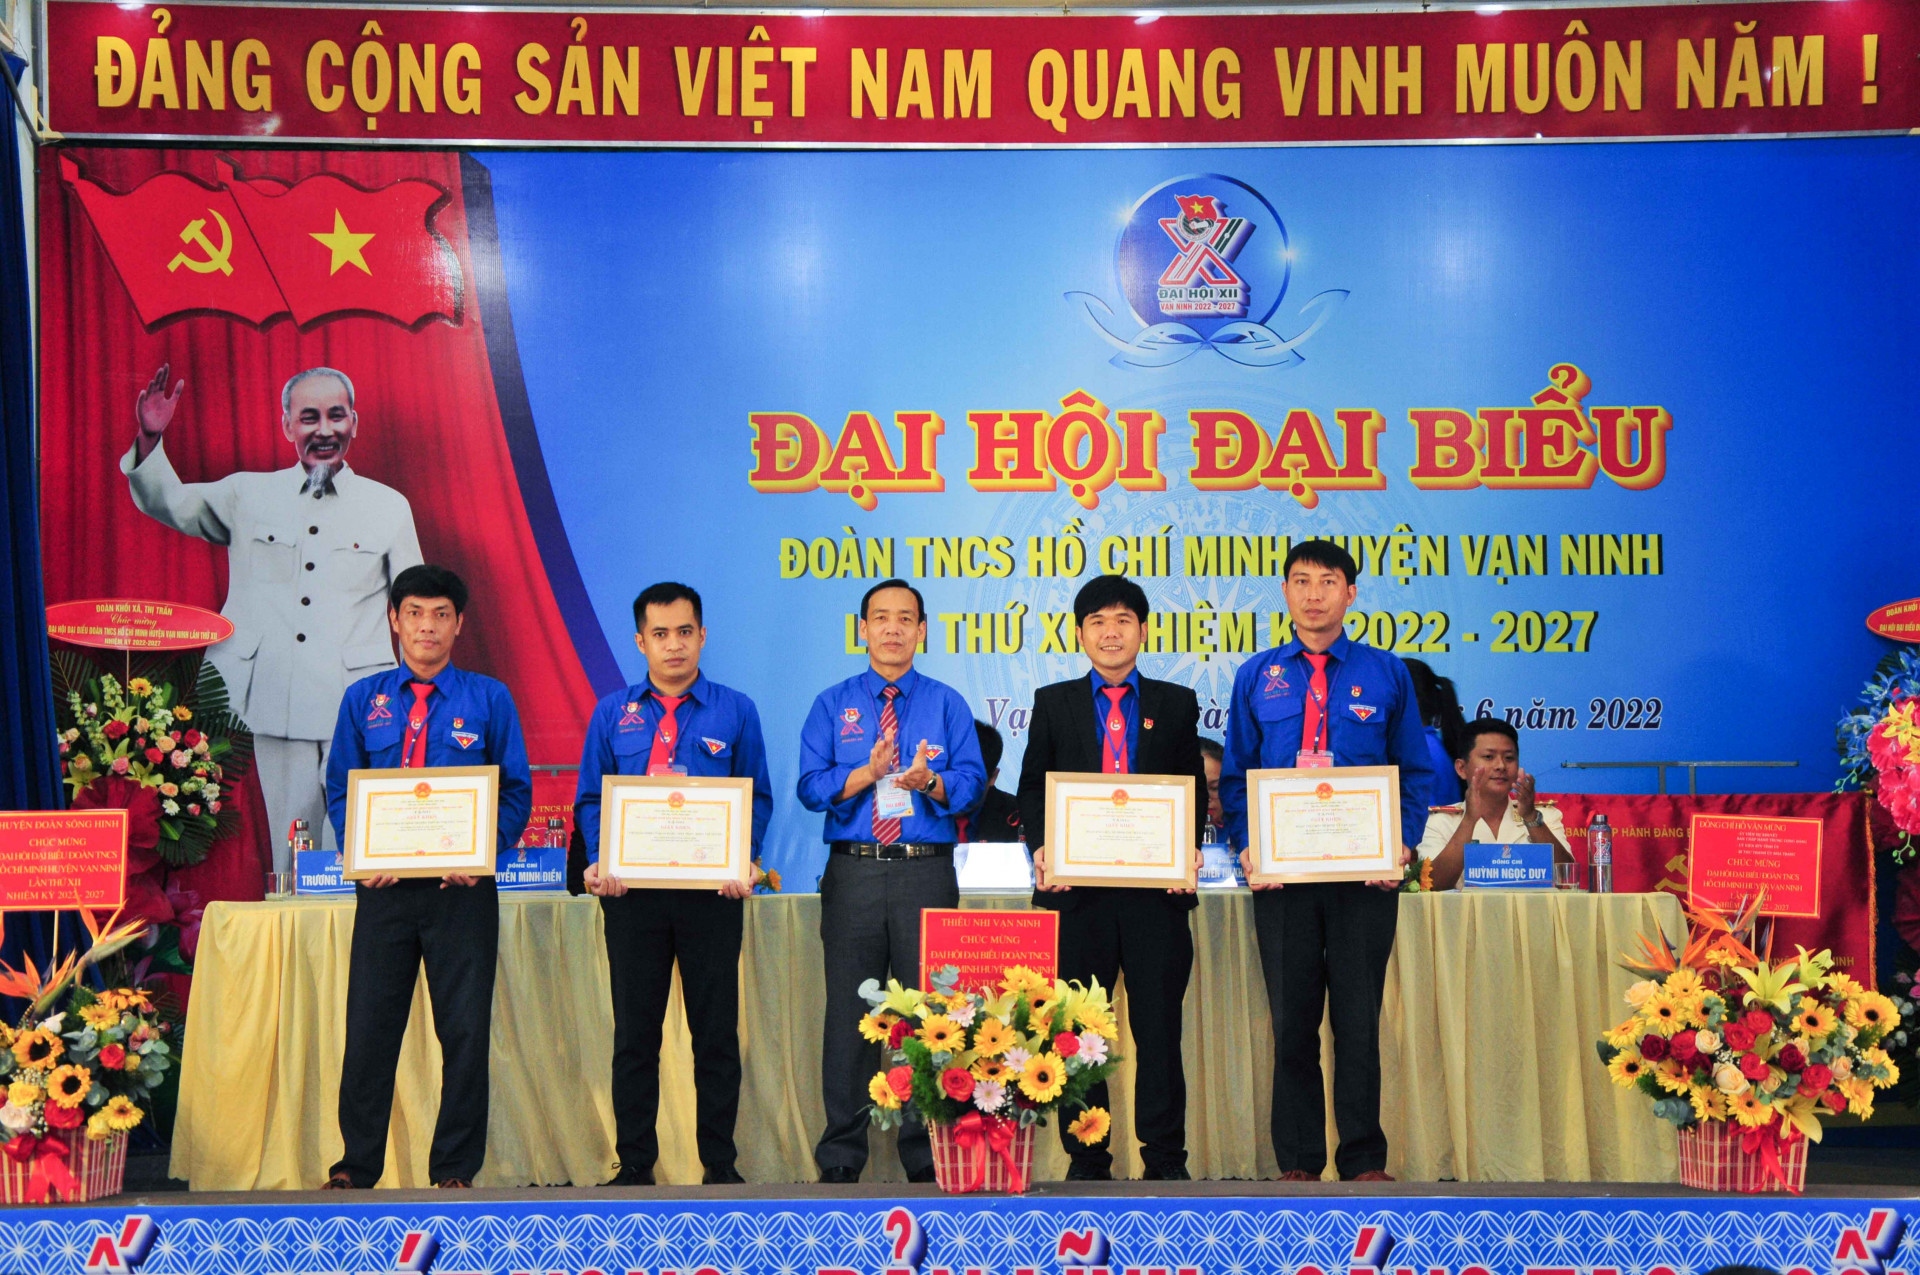 Các tập thể xuất sắc nhận giấy khen của UBND huyện Vạn Ninh